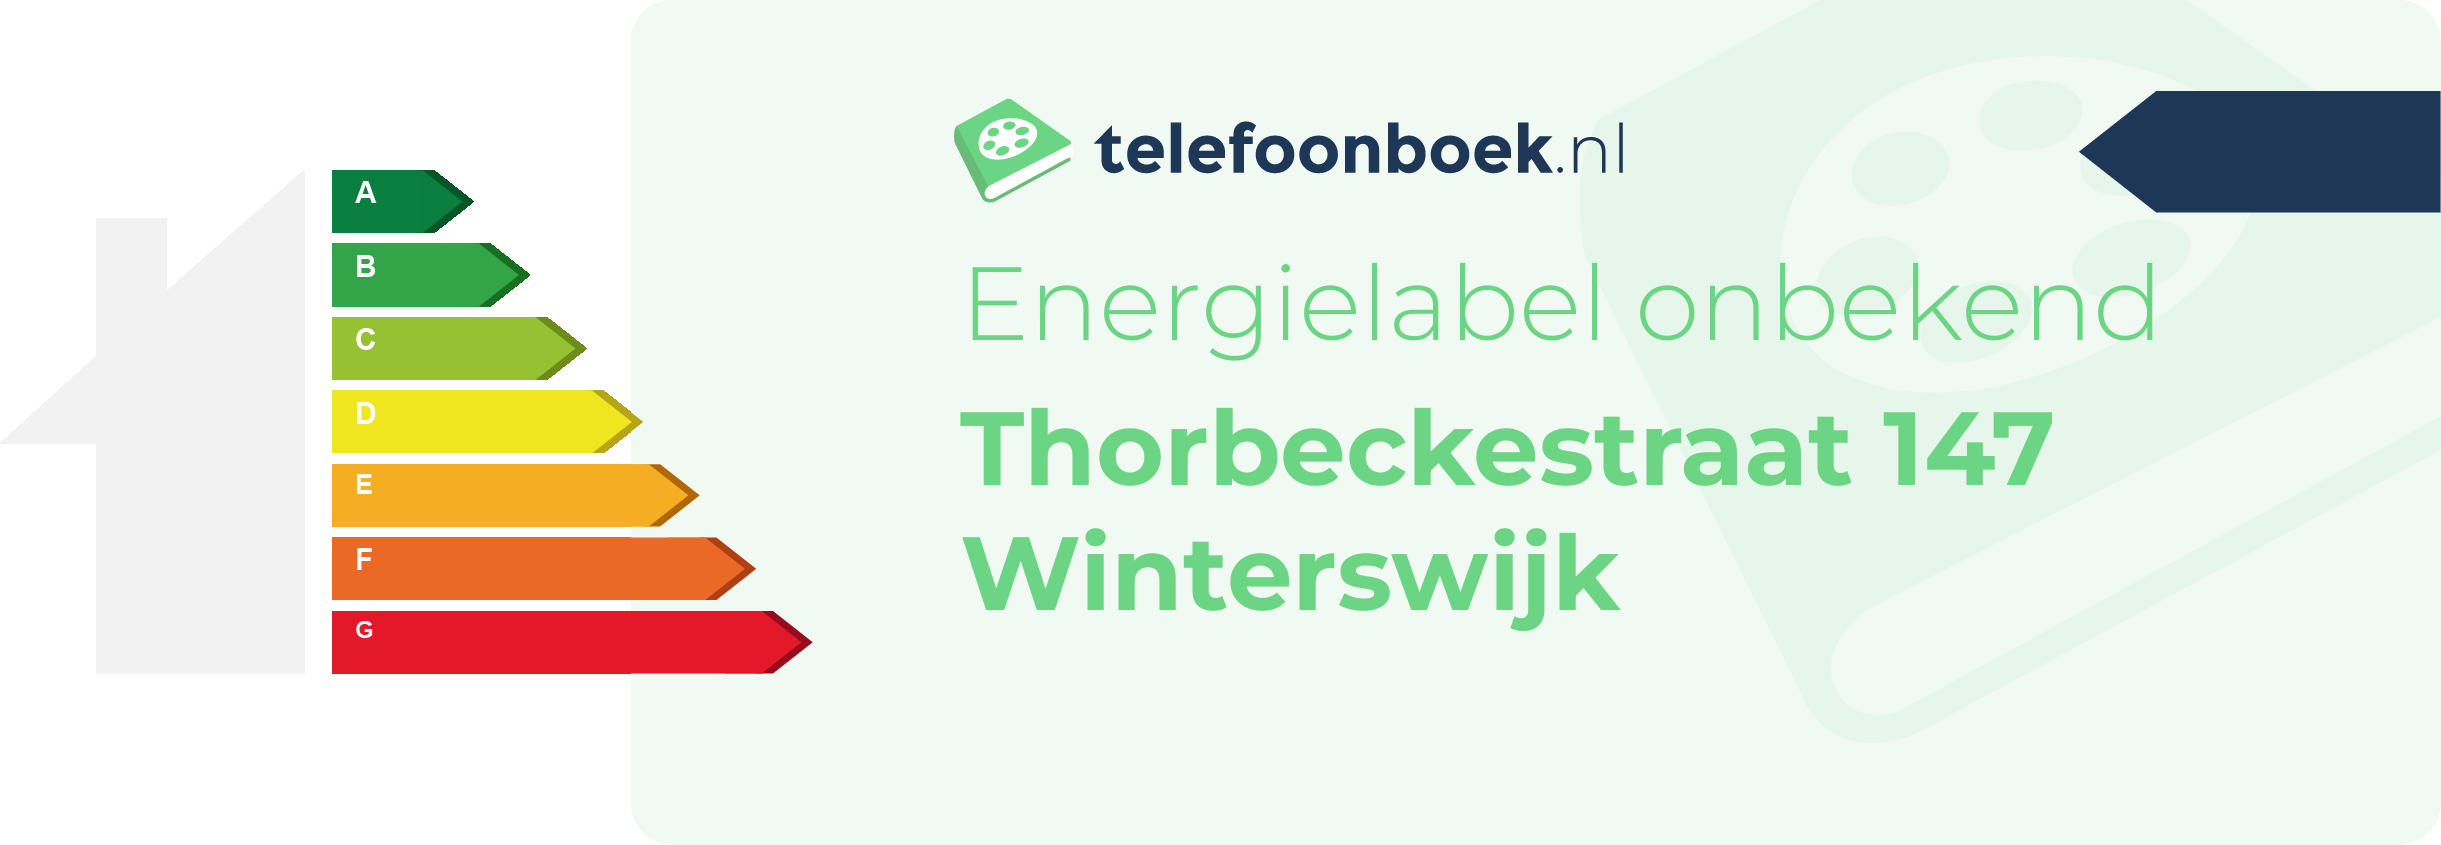 Energielabel Thorbeckestraat 147 Winterswijk